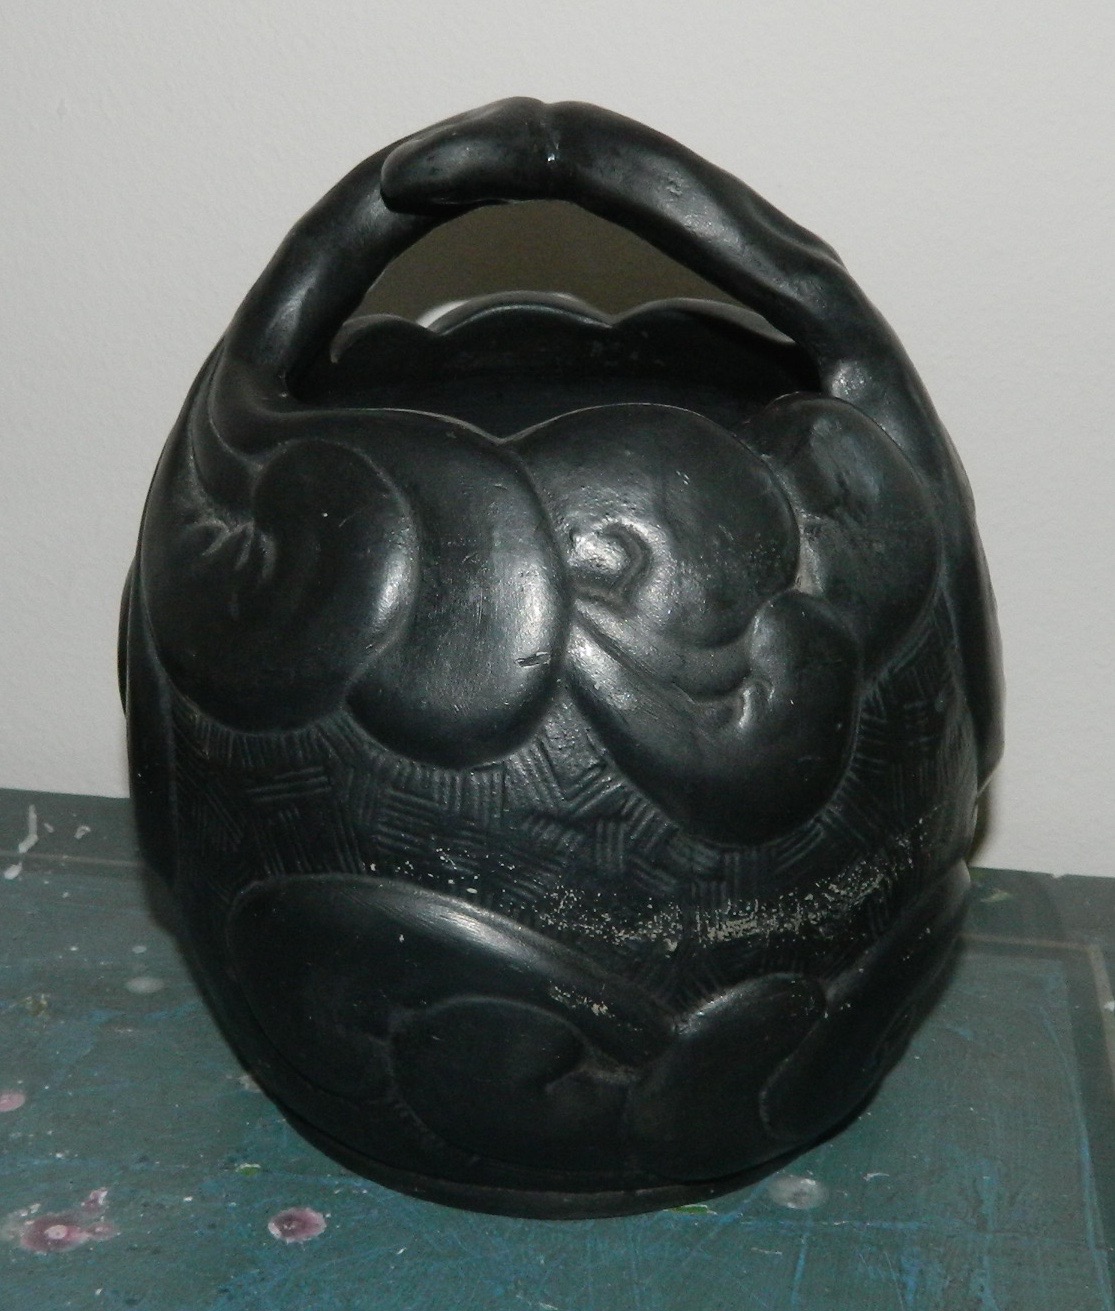 festspil på vegne af Kronisk KAD ringen - Hankekrukke i keramik fra L. Hjorth af Bindesbøll -  Hankekrukke i keramik fra L. Hjorth af Bindesbøll